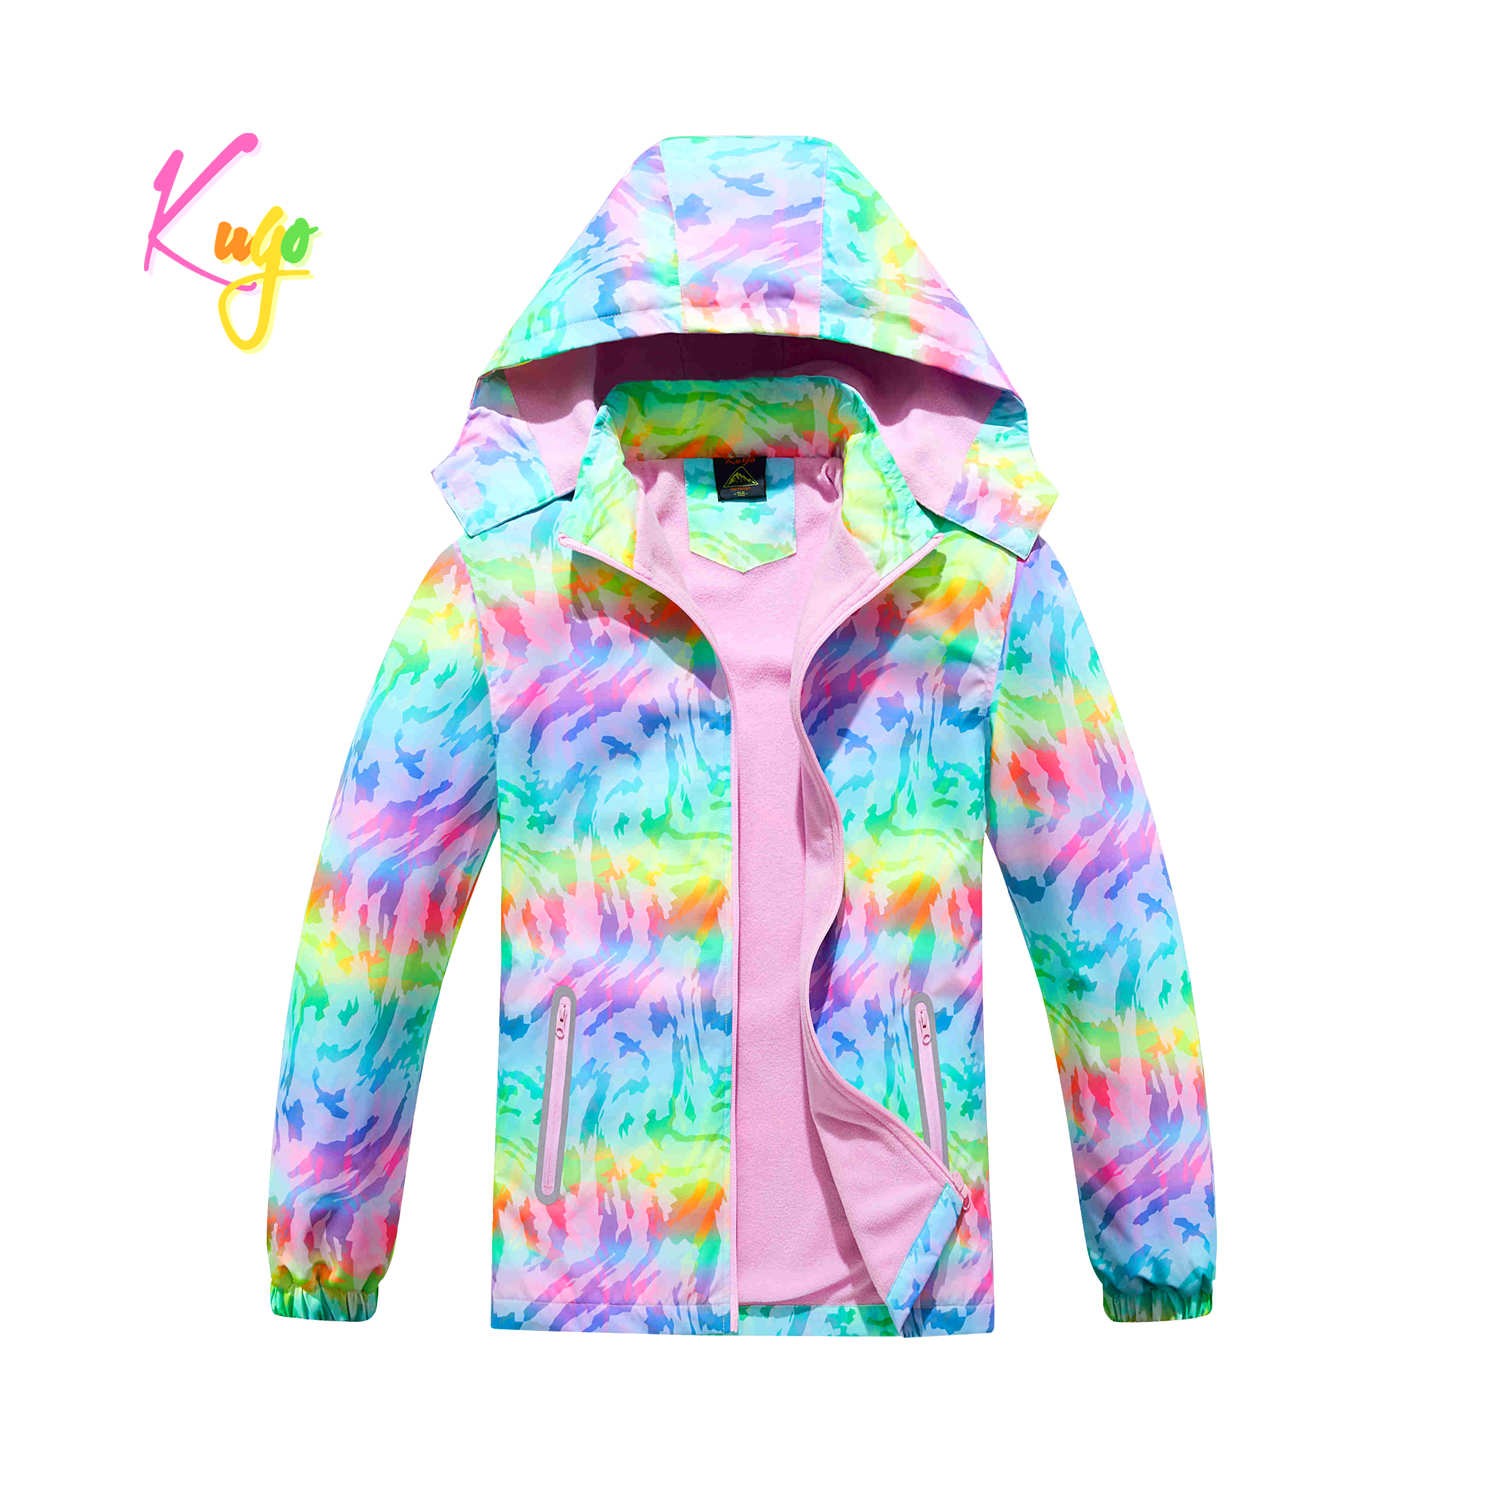 Dívčí podzimní bunda, zateplená - KUGO B2859, růžová, mix barev Barva: Mix barev, Velikost: 164